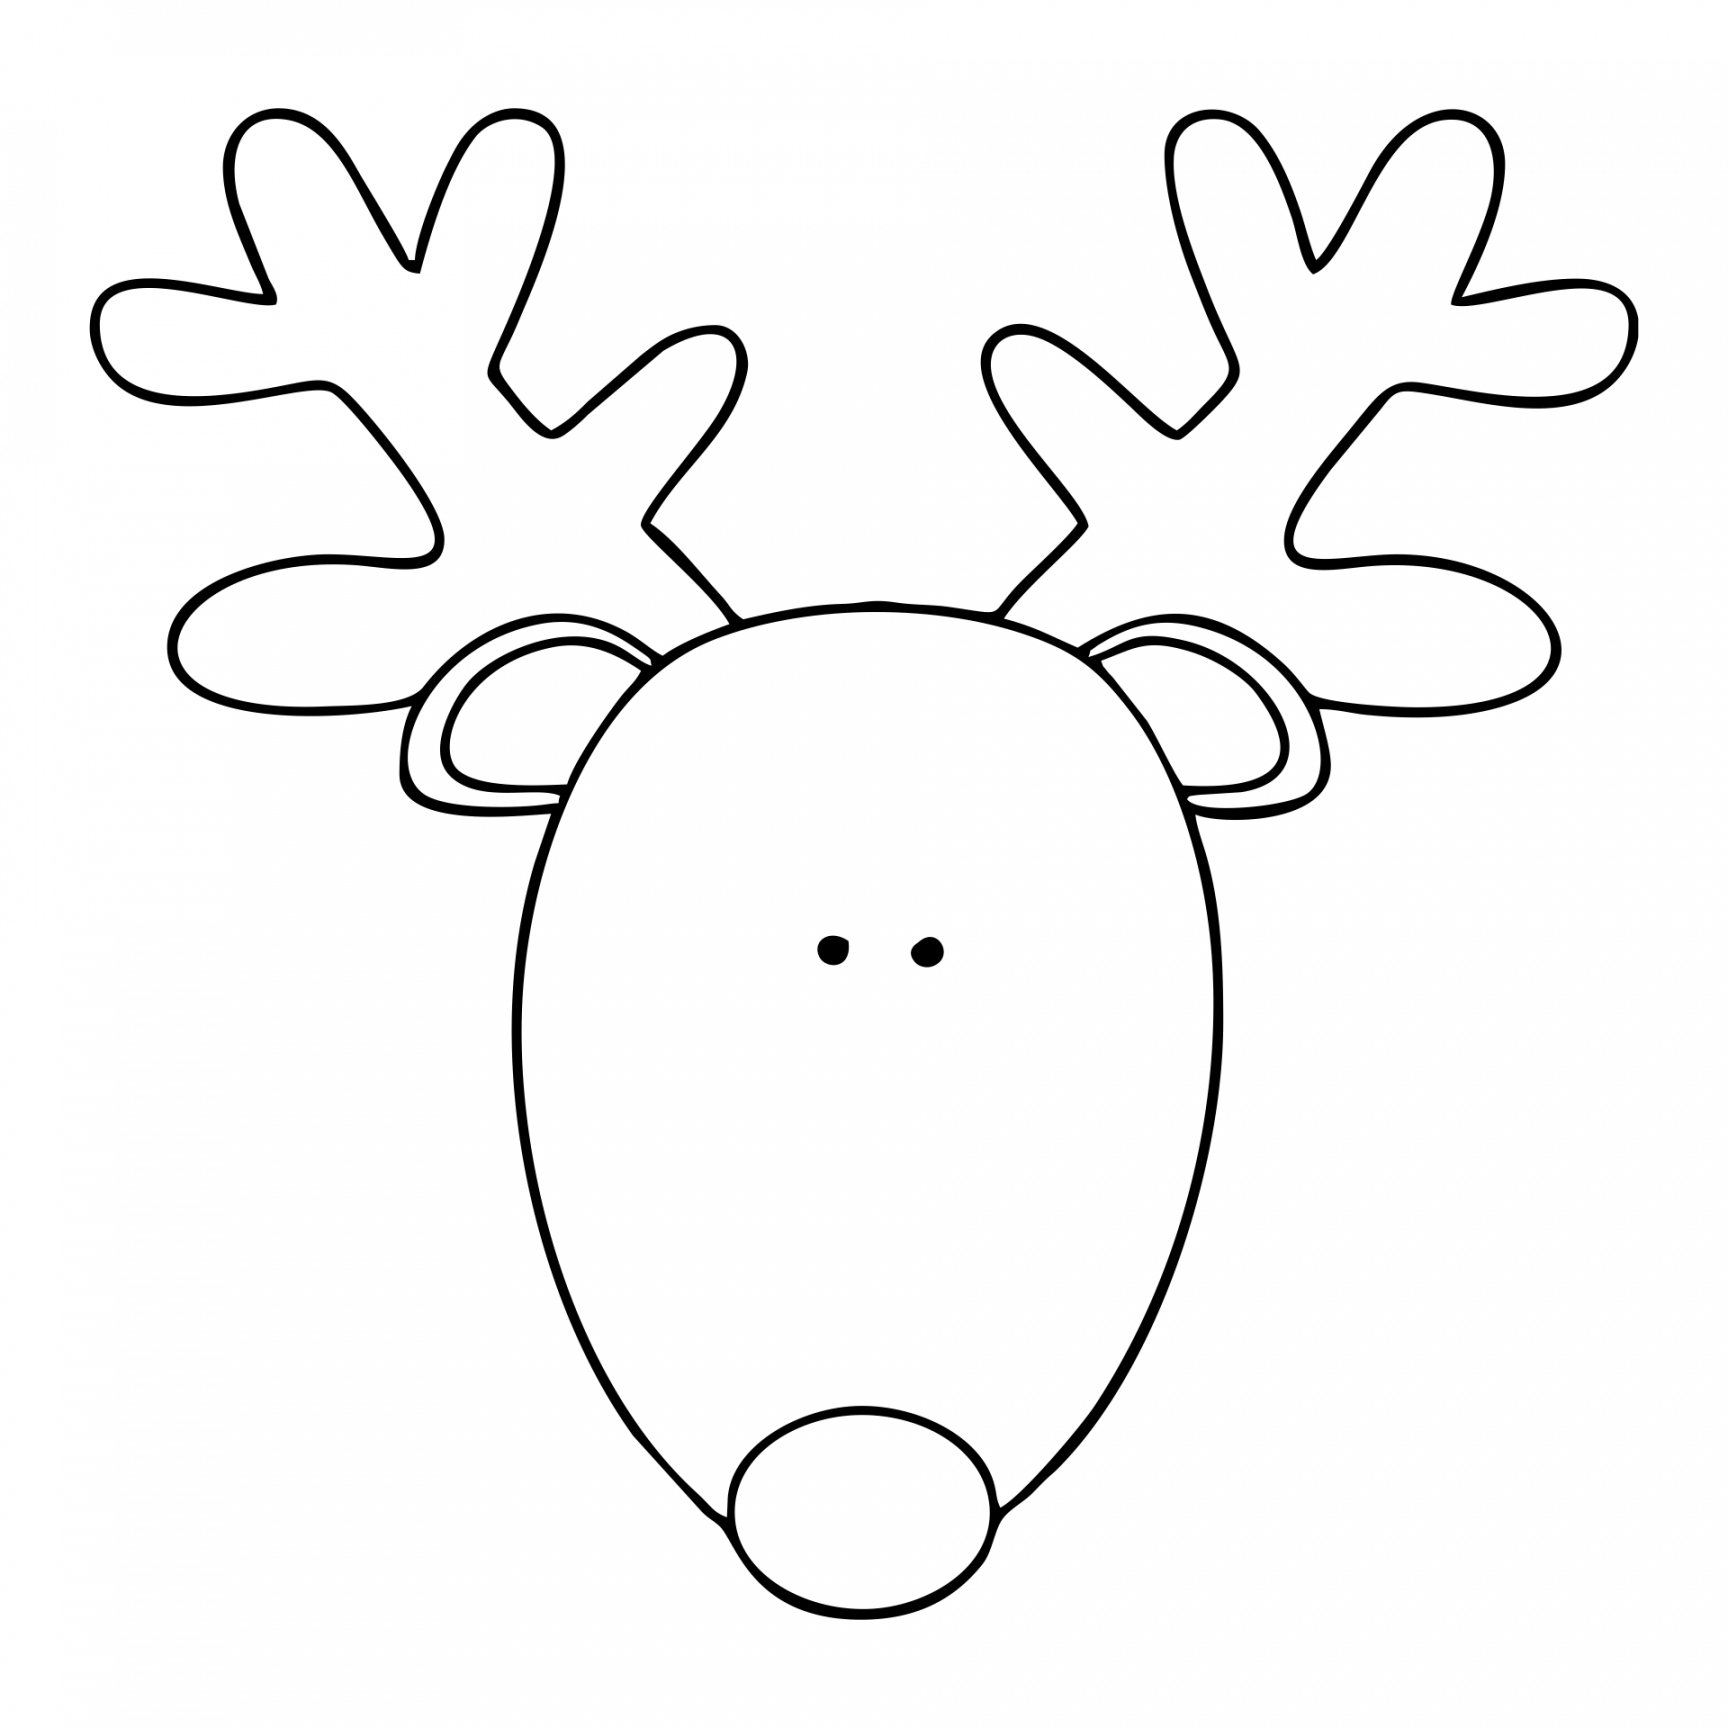 Best Printable Reindeer Patterns - printablee - Free Printable Reindeer Template